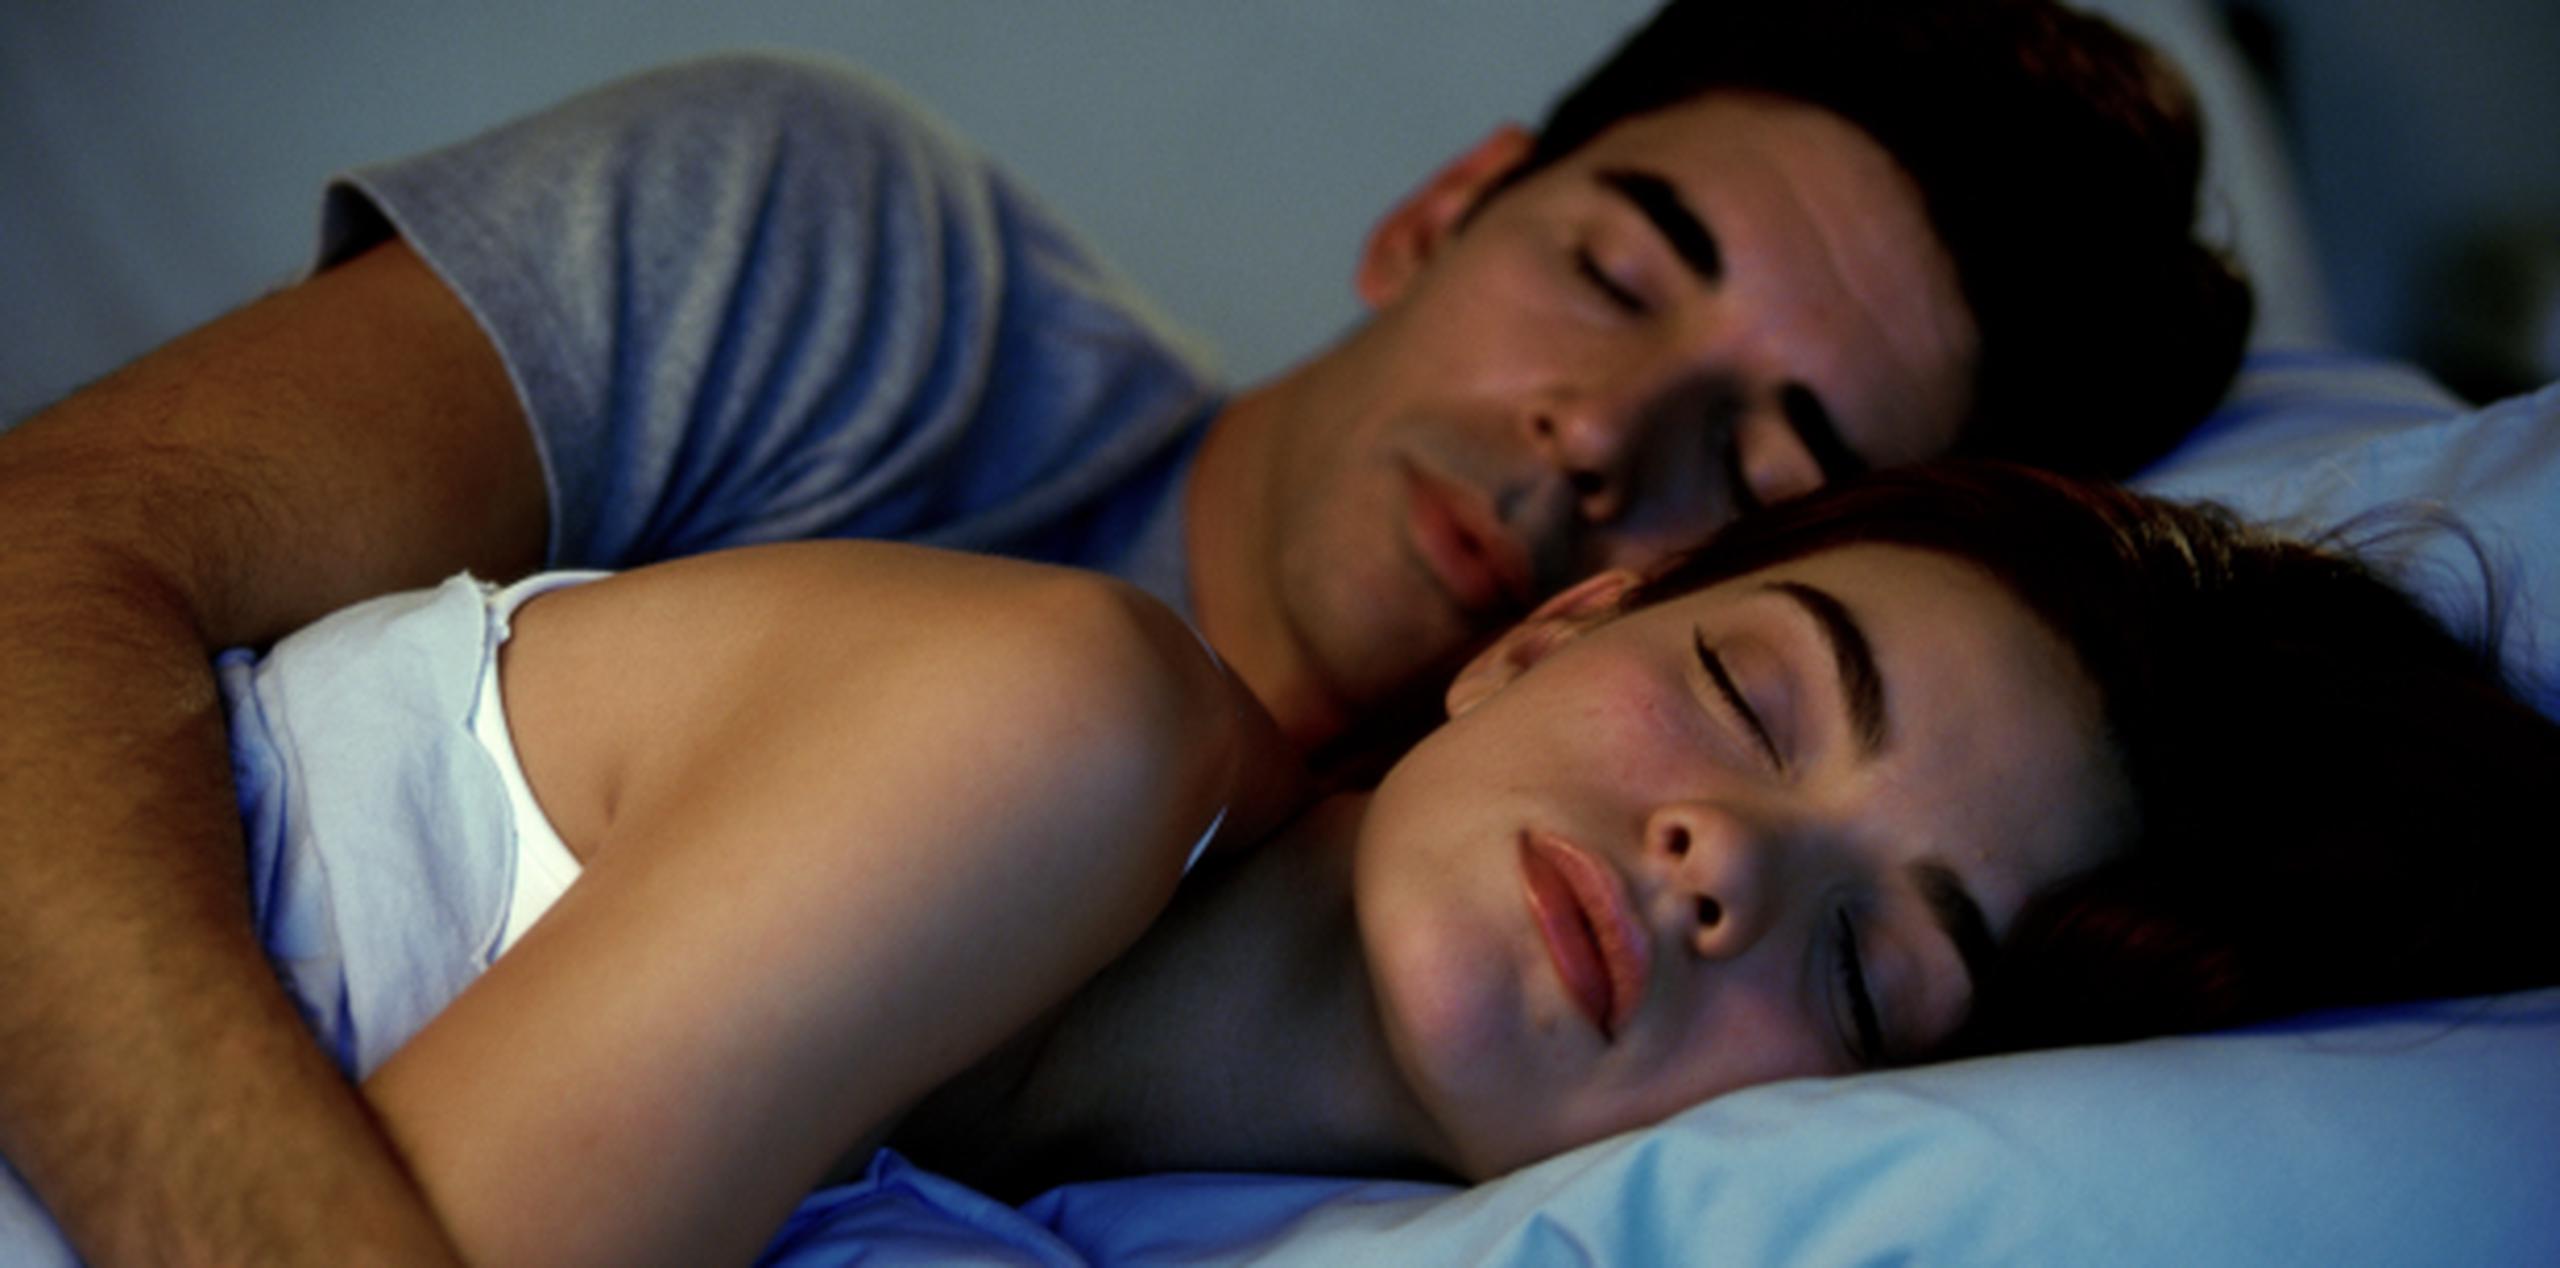 Si duermen abrazados estarán estableciendo una conexión más profunda. (Archivo)